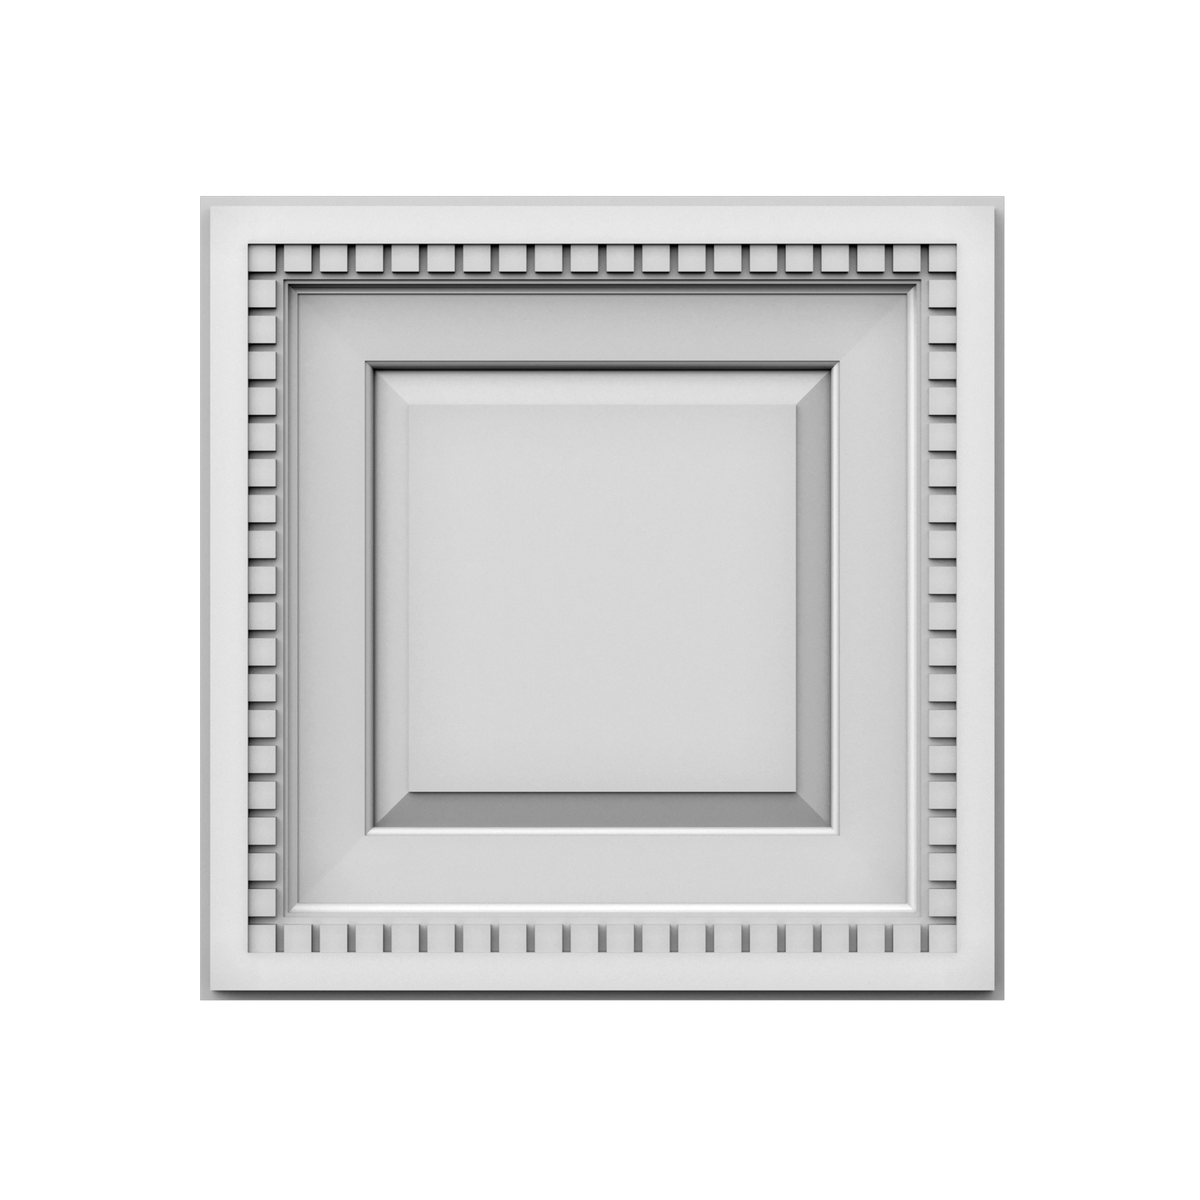 Плита потолочная полиуретановая Gaudi Decor R 4050